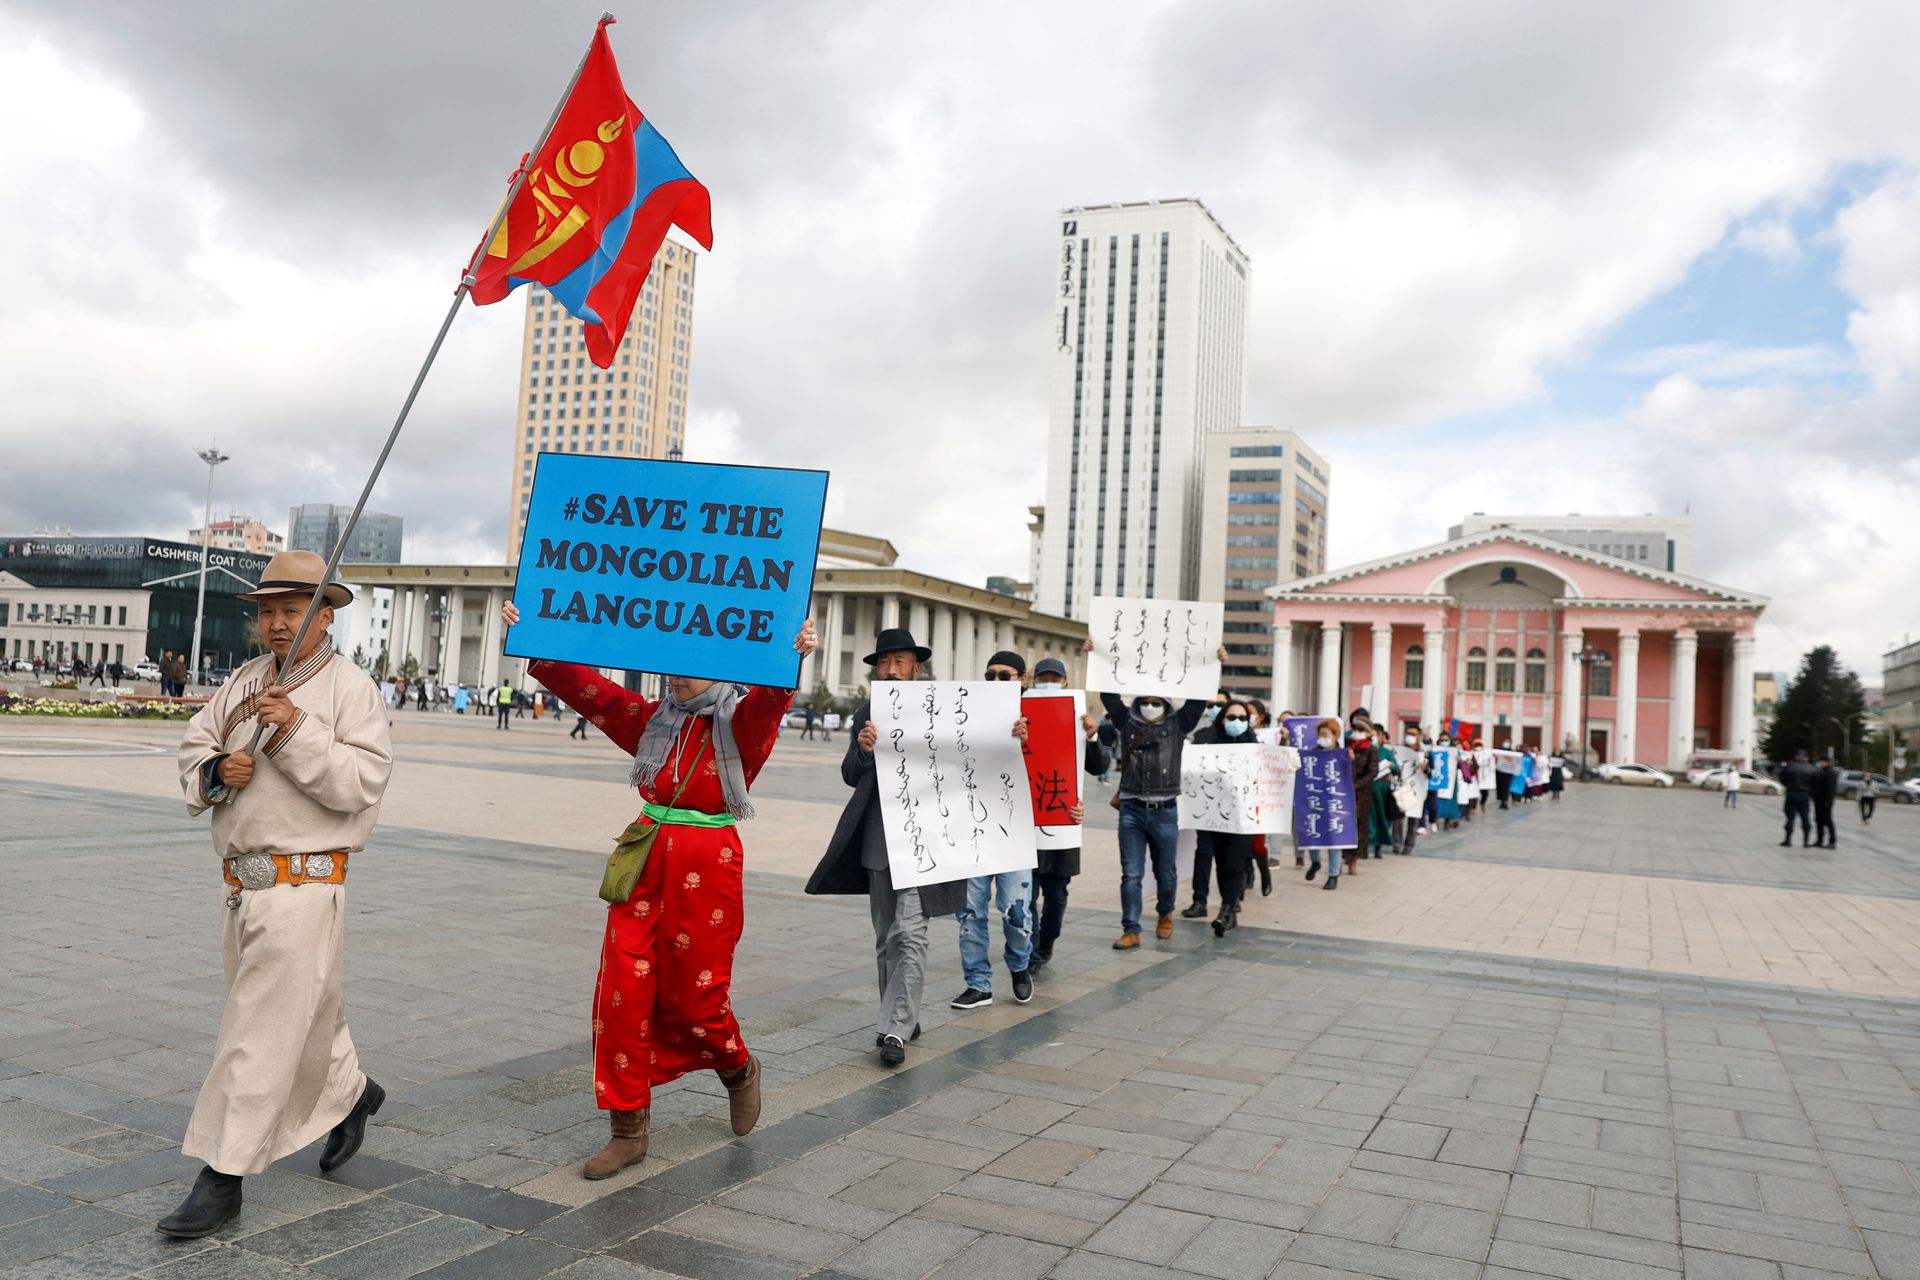 内蒙古商都爆大规模抗议 两万人围堵县政府反贪腐 — 普通话主页